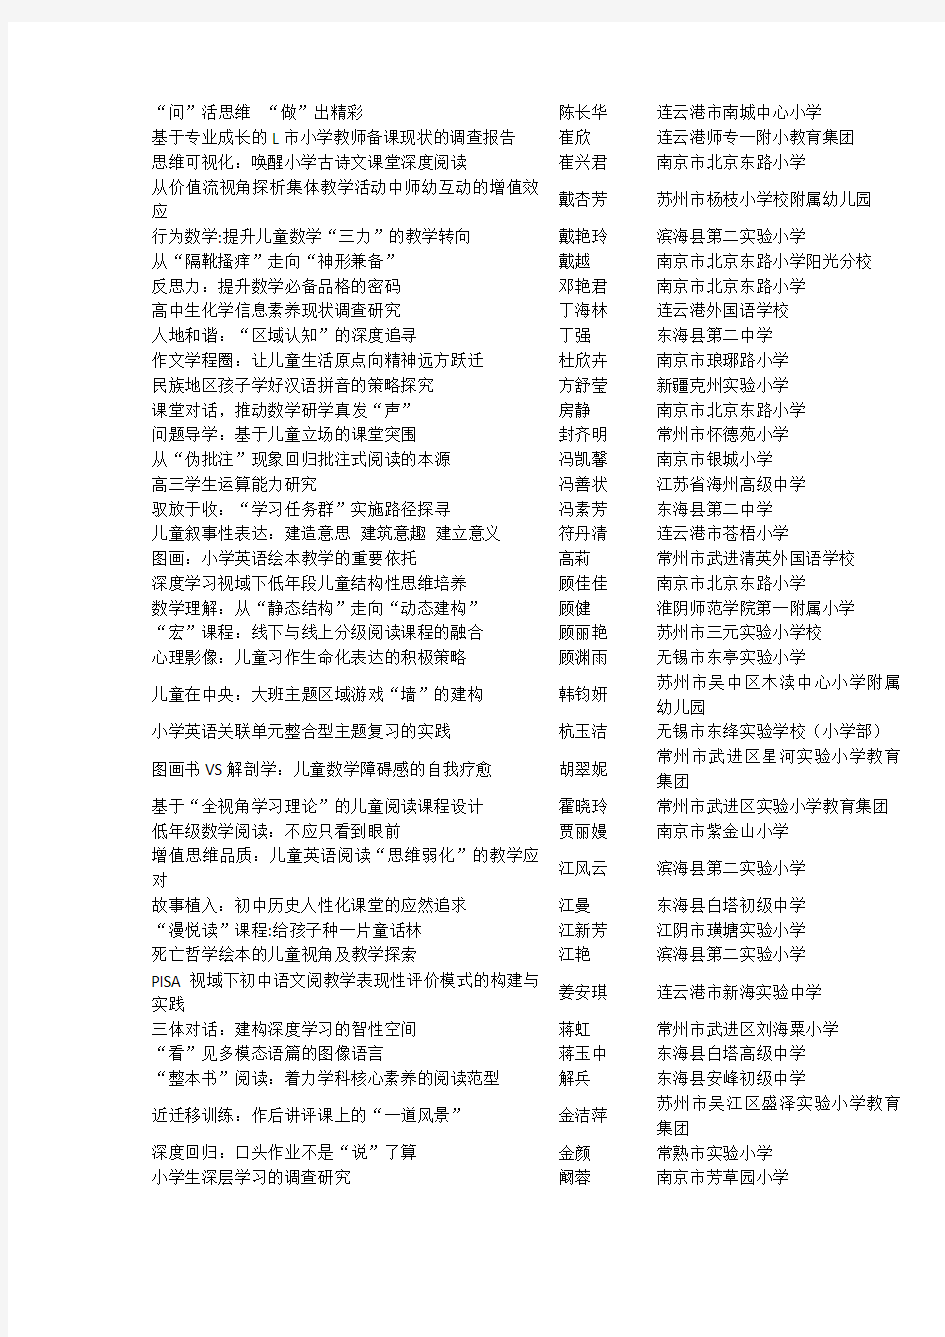 2019年江苏省“教海探航”征文竞赛获奖名单